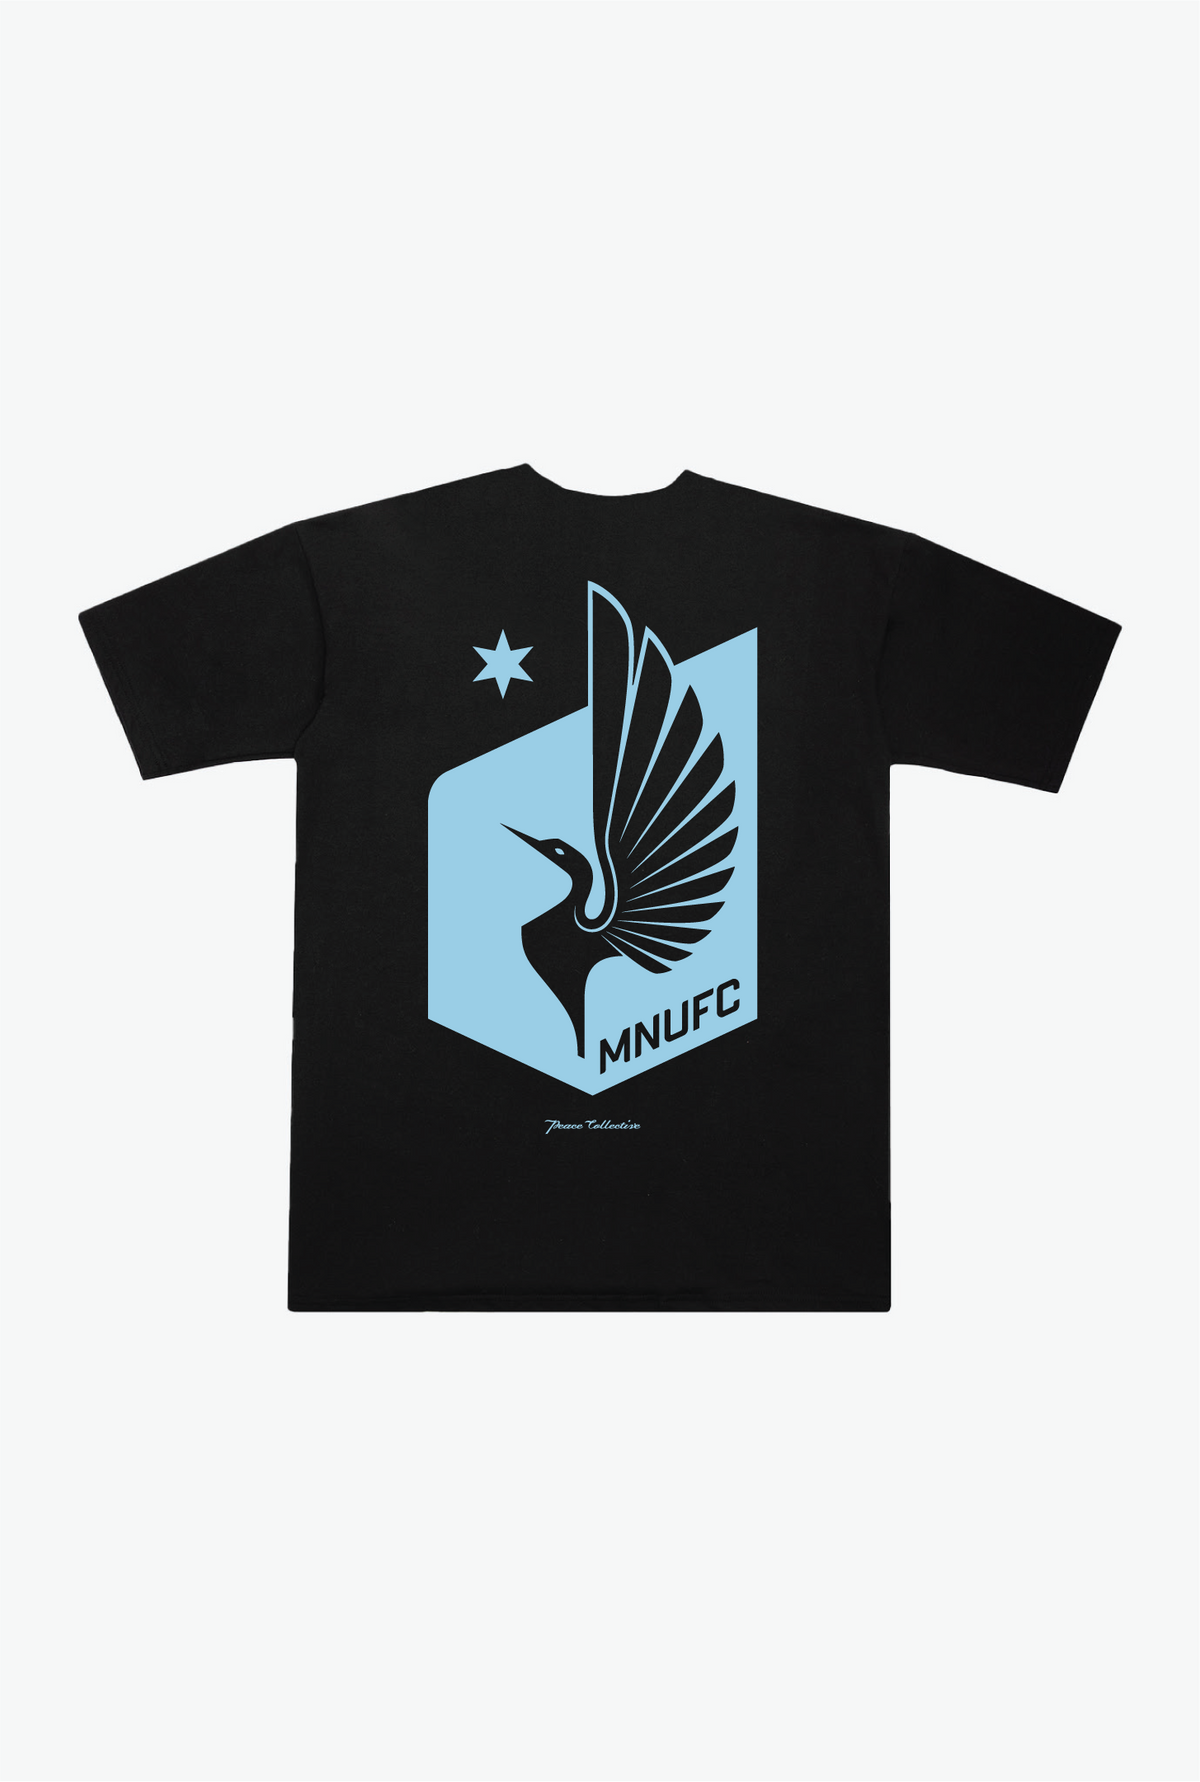 Minnesota United FC Essentials Heavyweight T-Shirt - Black